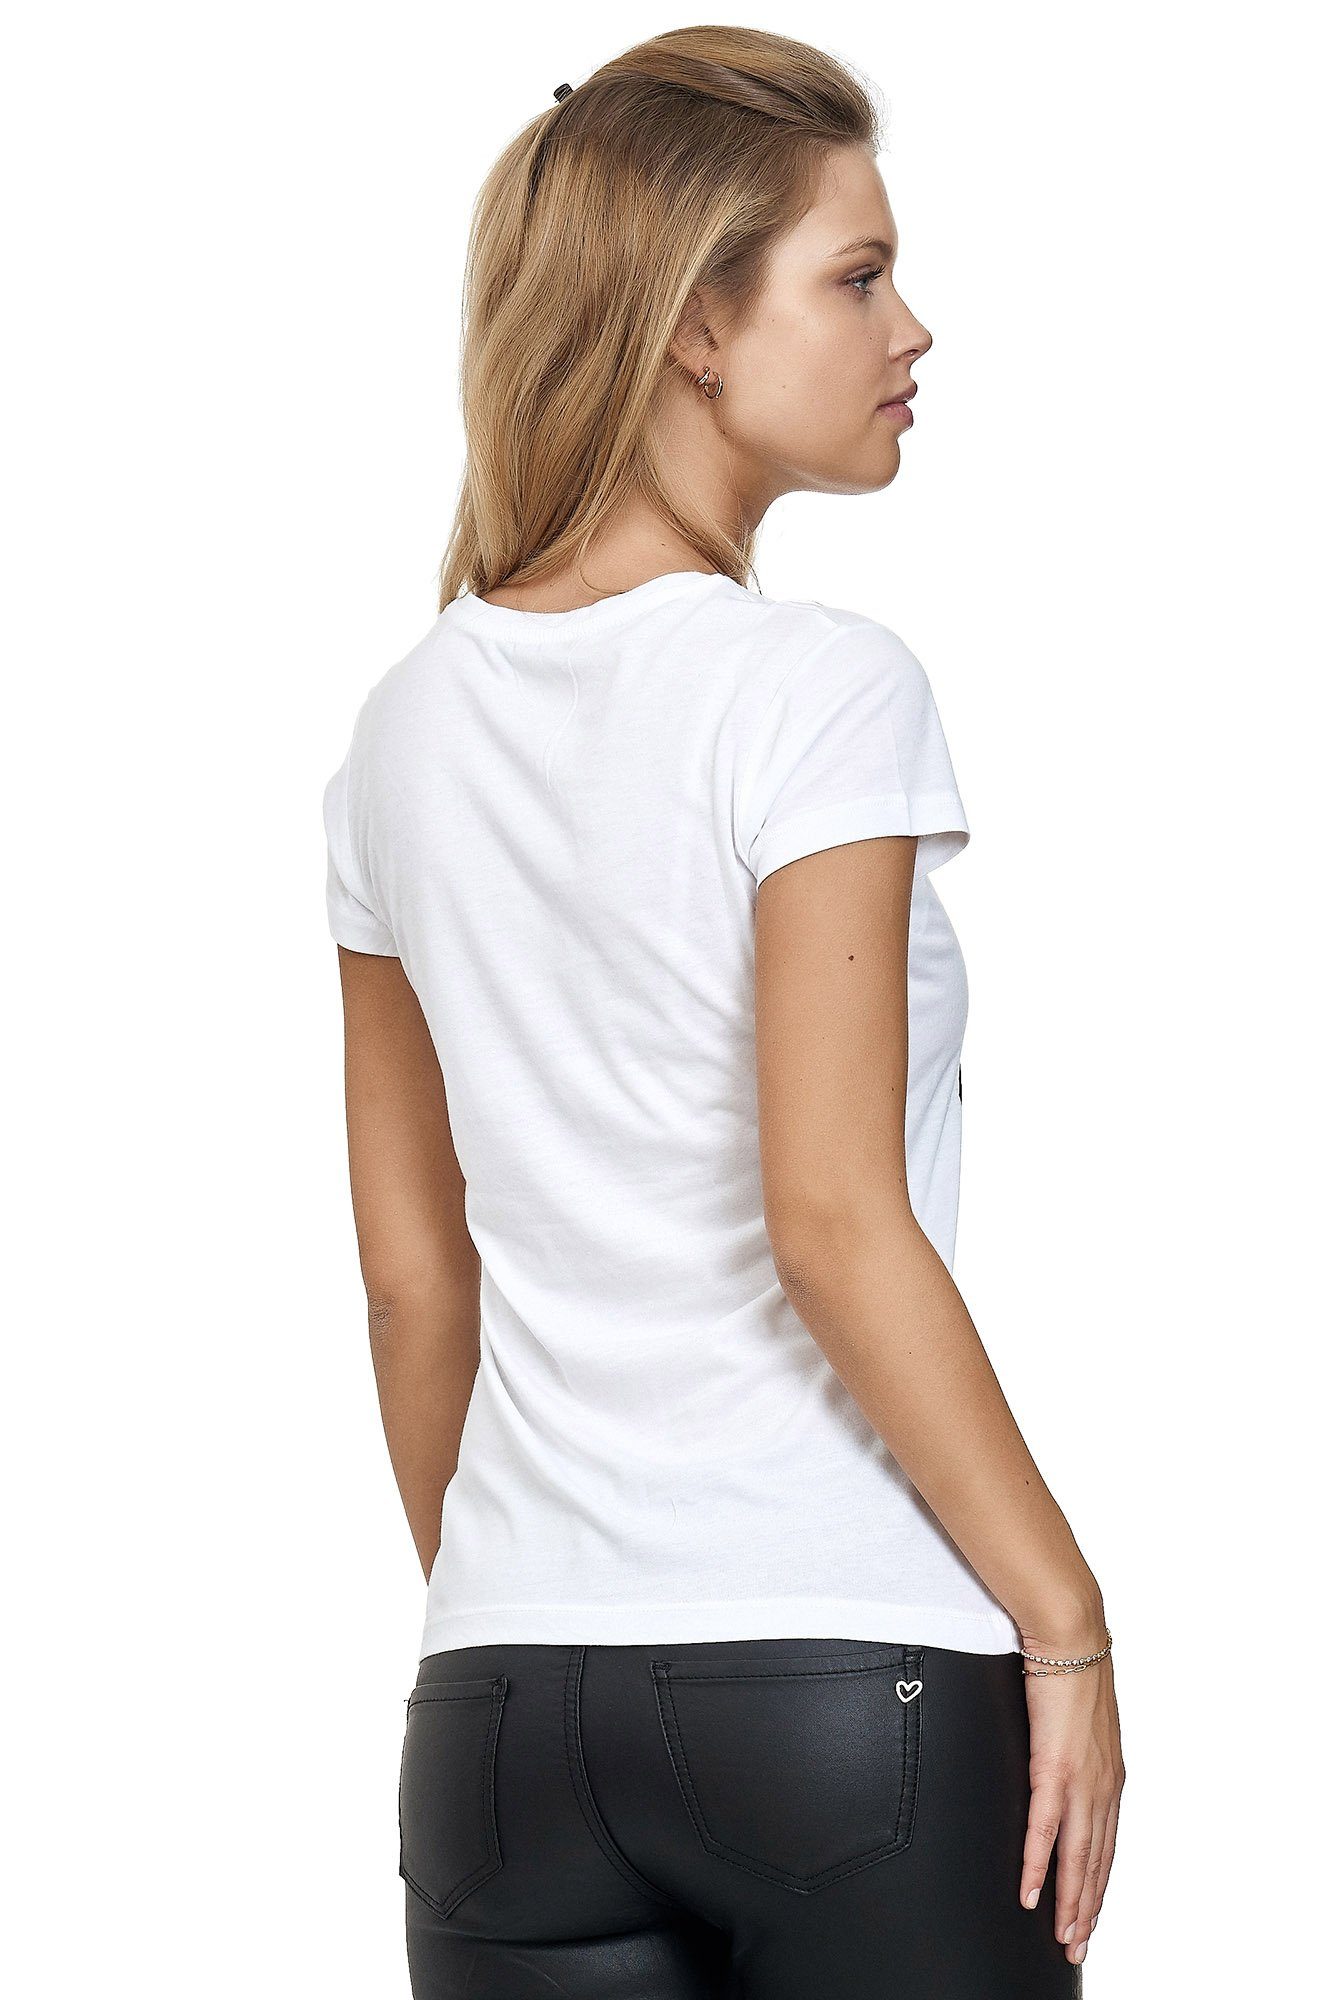 Decay T-Shirt mit glänzendem weiß Frontprint